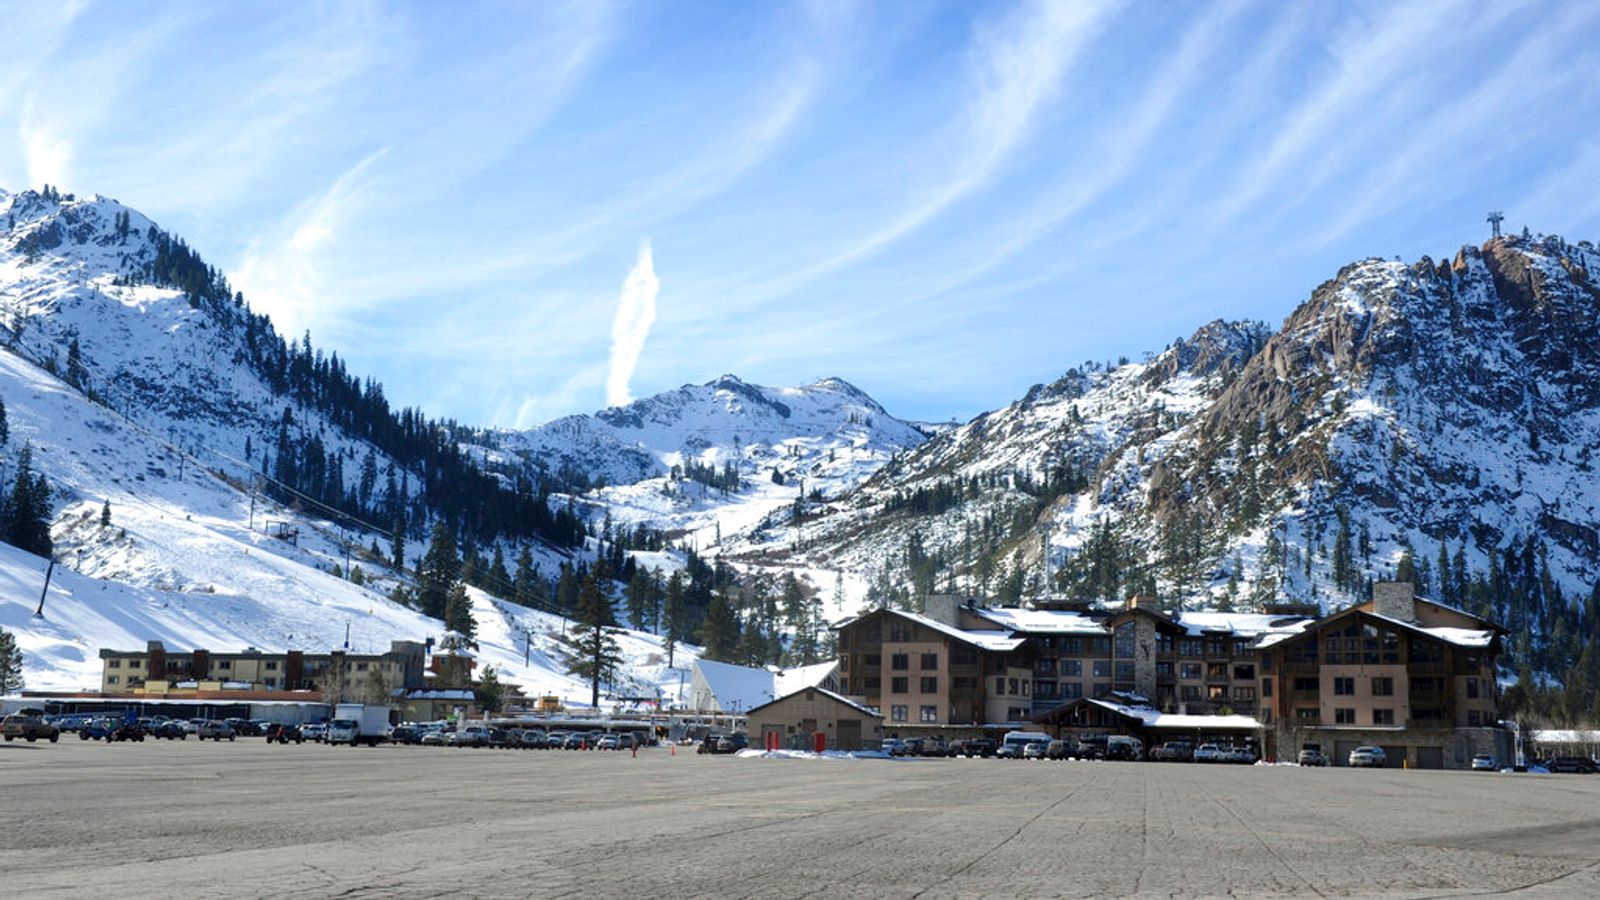 Времето: Лавина в ски курорта в Калифорния, докато сняг и пориви връхлетяха на запад след смъртоносни бури, връхлетяли източните части на САЩ